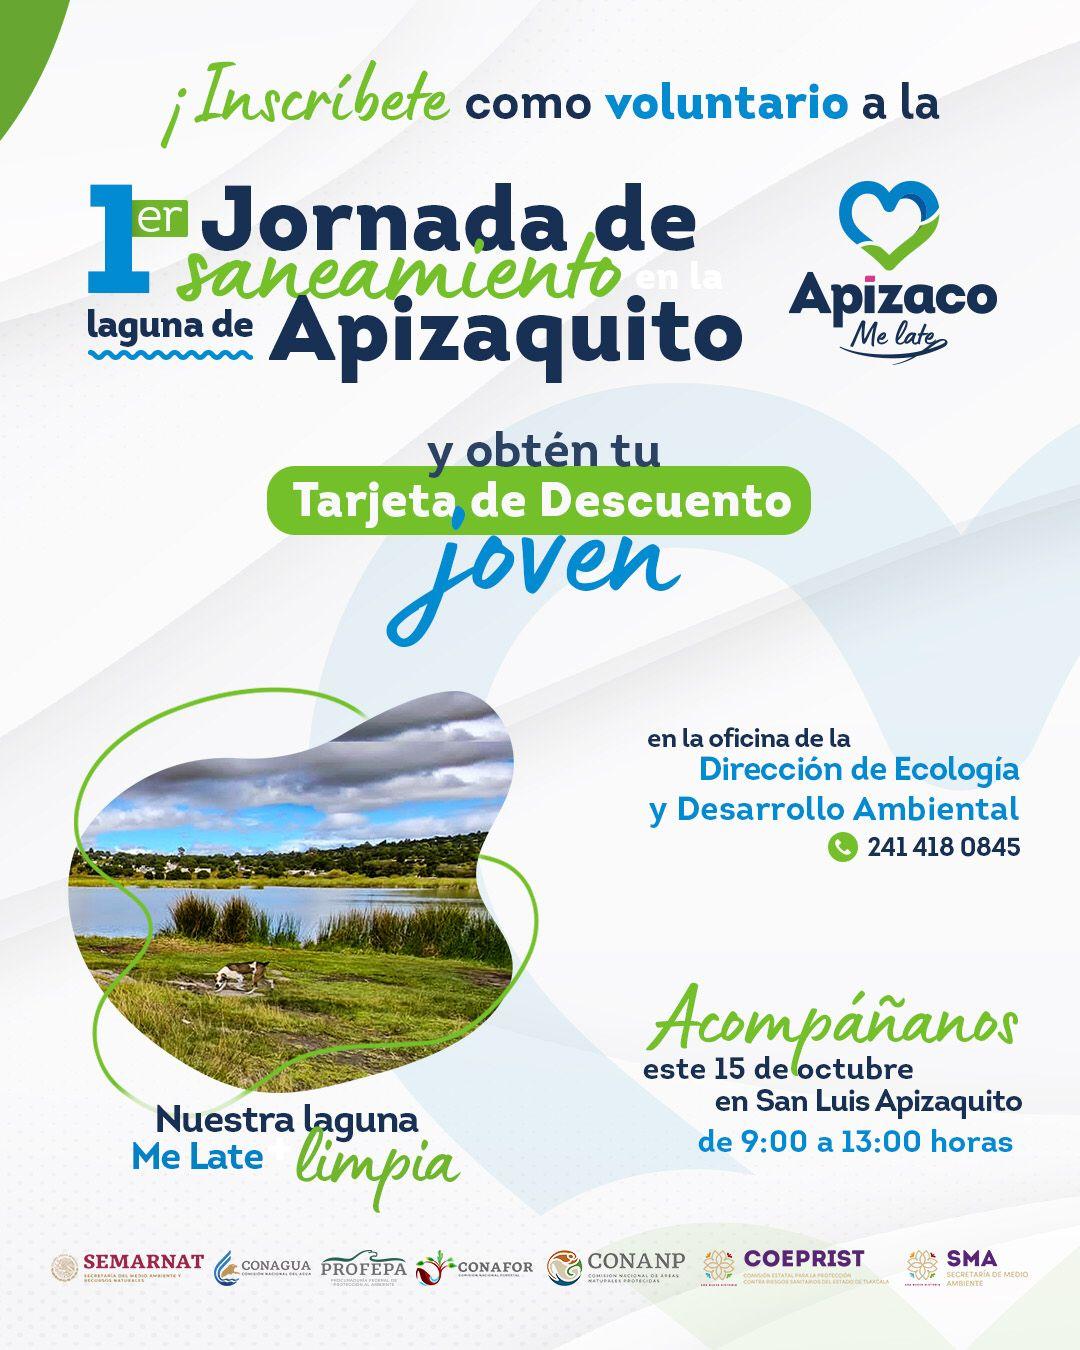 Gobierno de Apizaco invita a jornada de limpieza de la laguna de Apizaquito